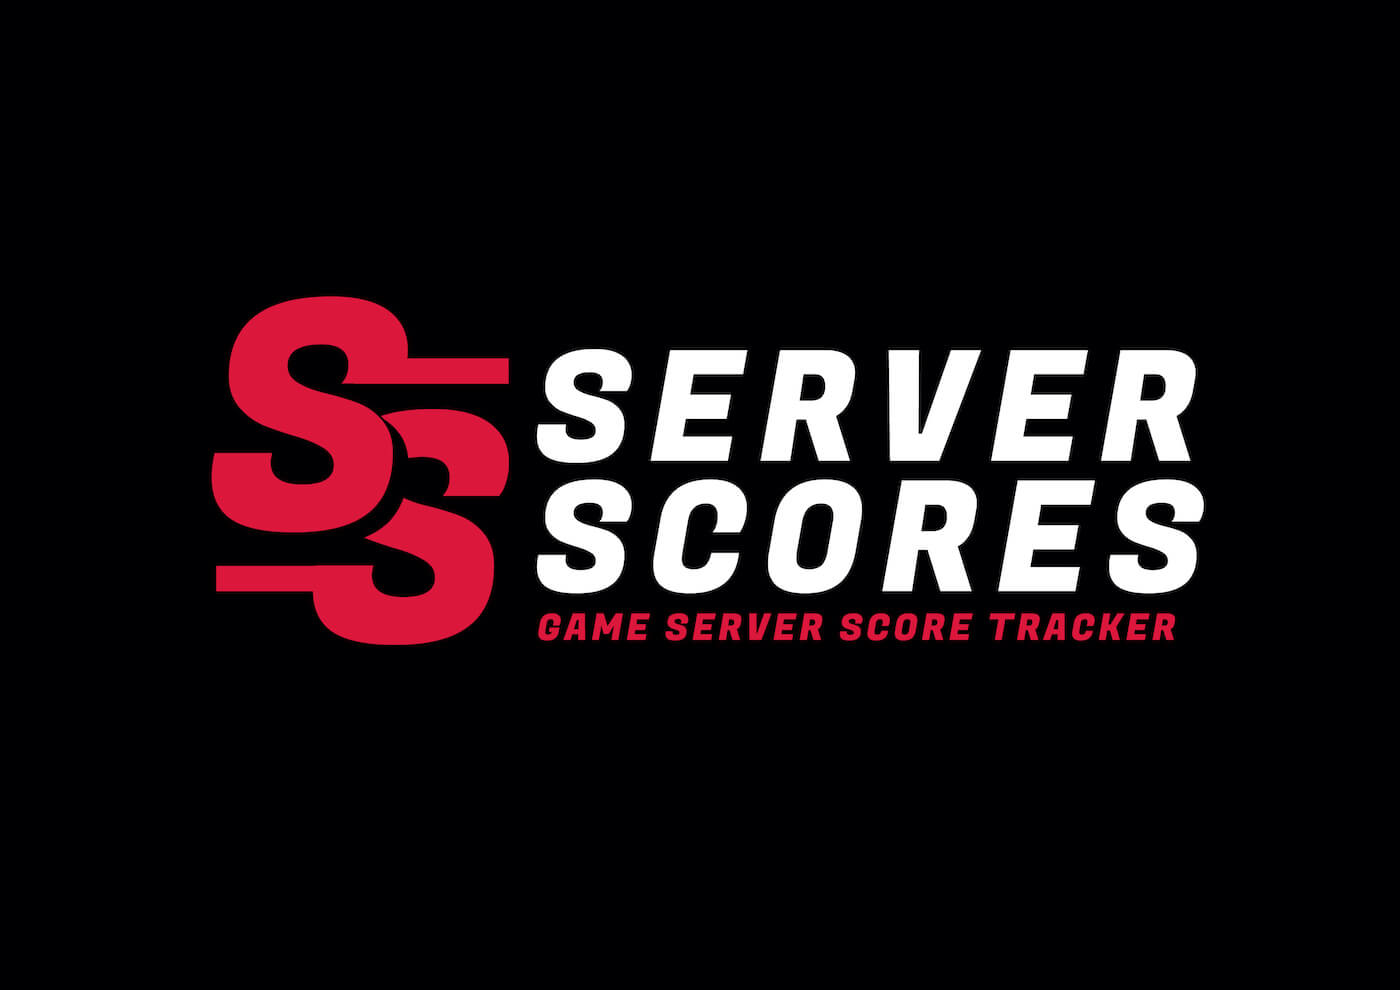 Welcome to ServerScores.com Image